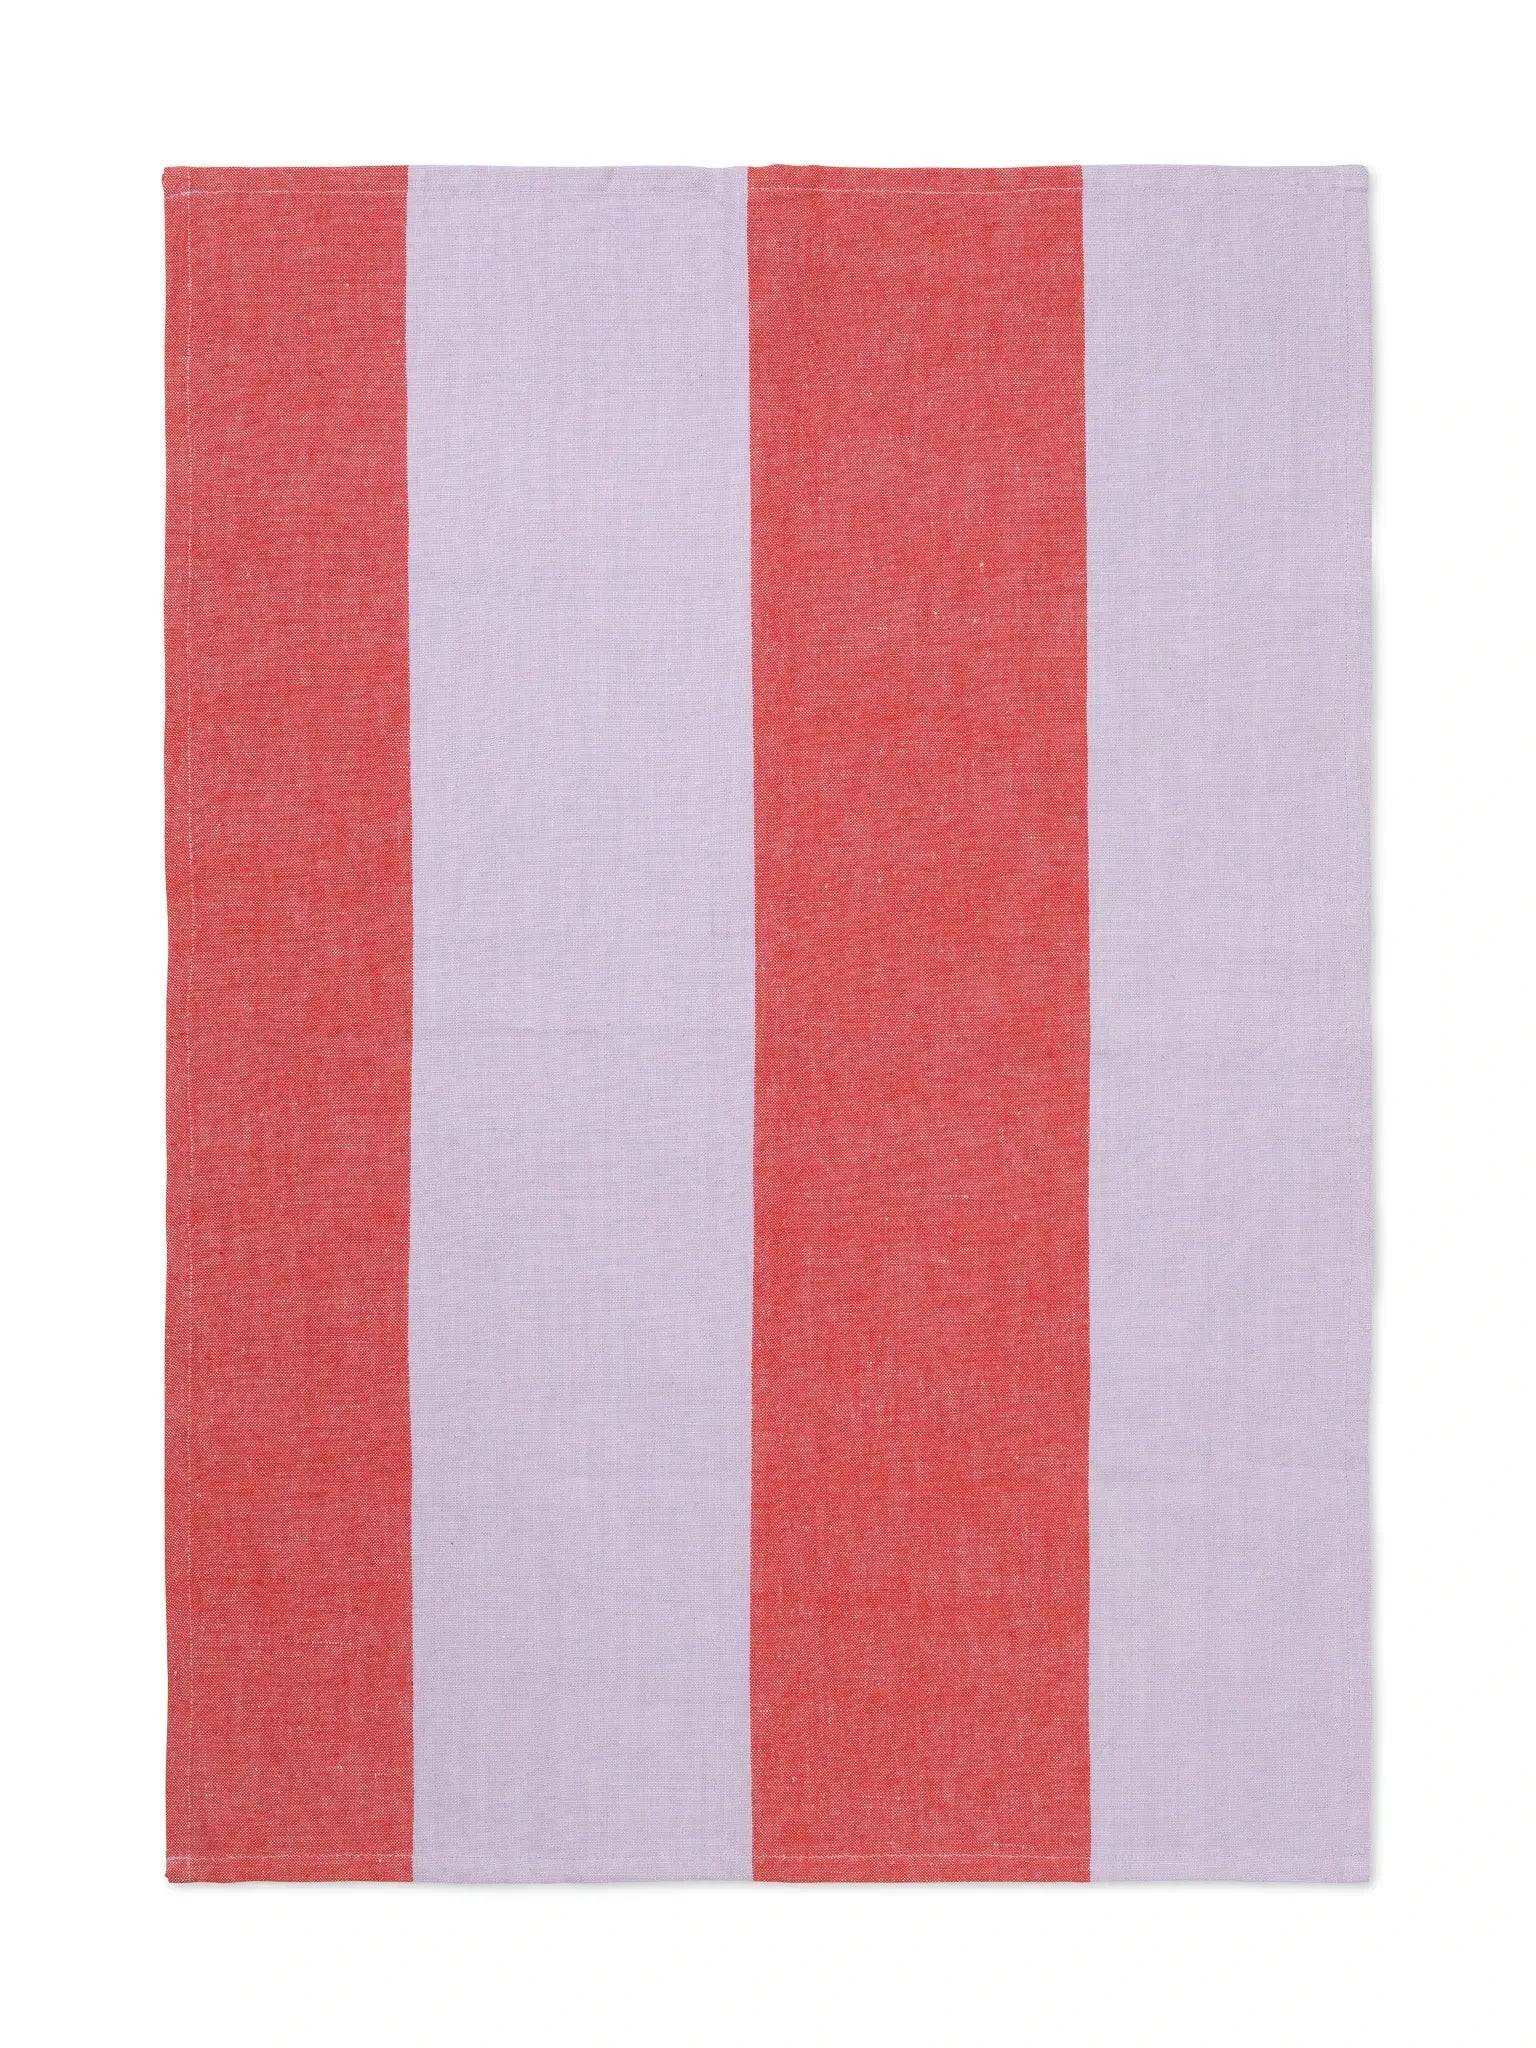 Hale Tea Towel | Cotton-Linen | by ferm Living - Lifestory